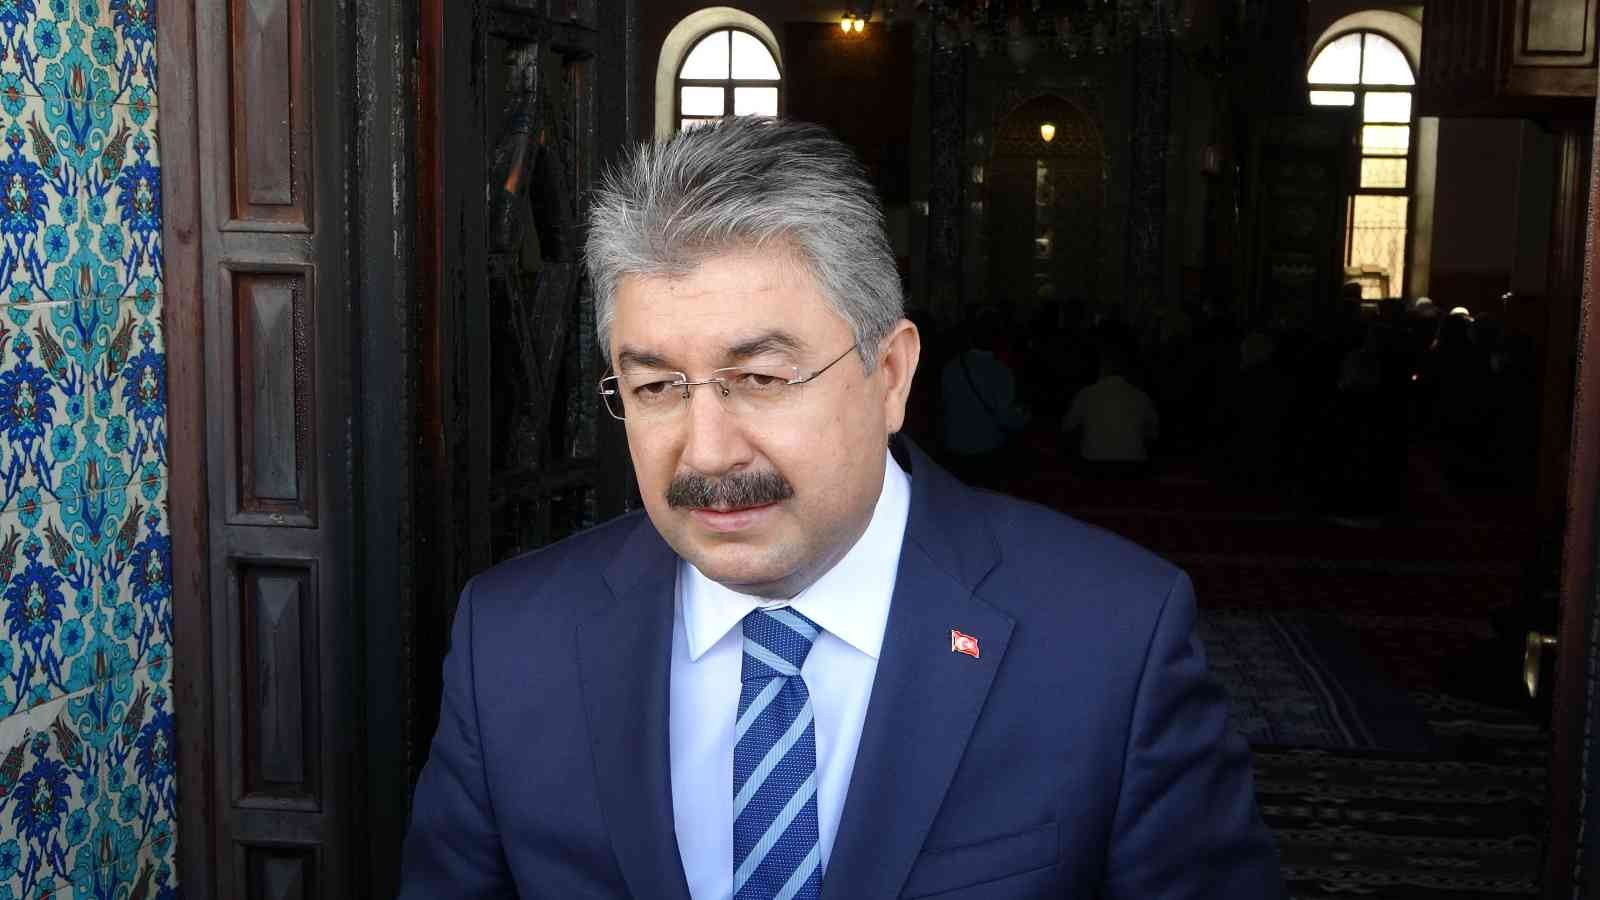 Vali Erdinç Yılmaz: “Caminin kapısını yakan şahıs maalesef madde bağımlısı” #osmaniye